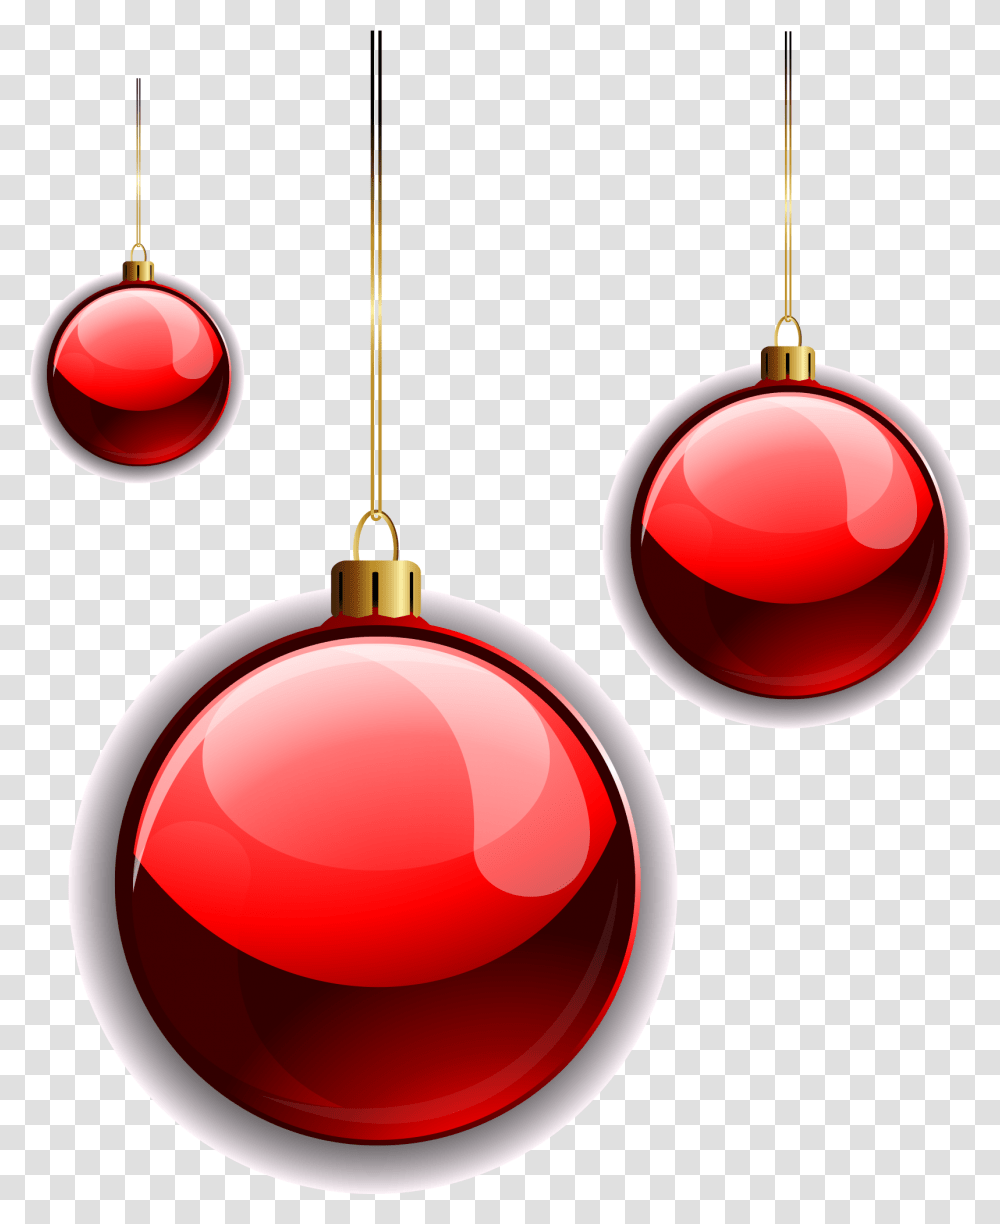 Red Ornament Bola De Natal Em, Pendant Transparent Png